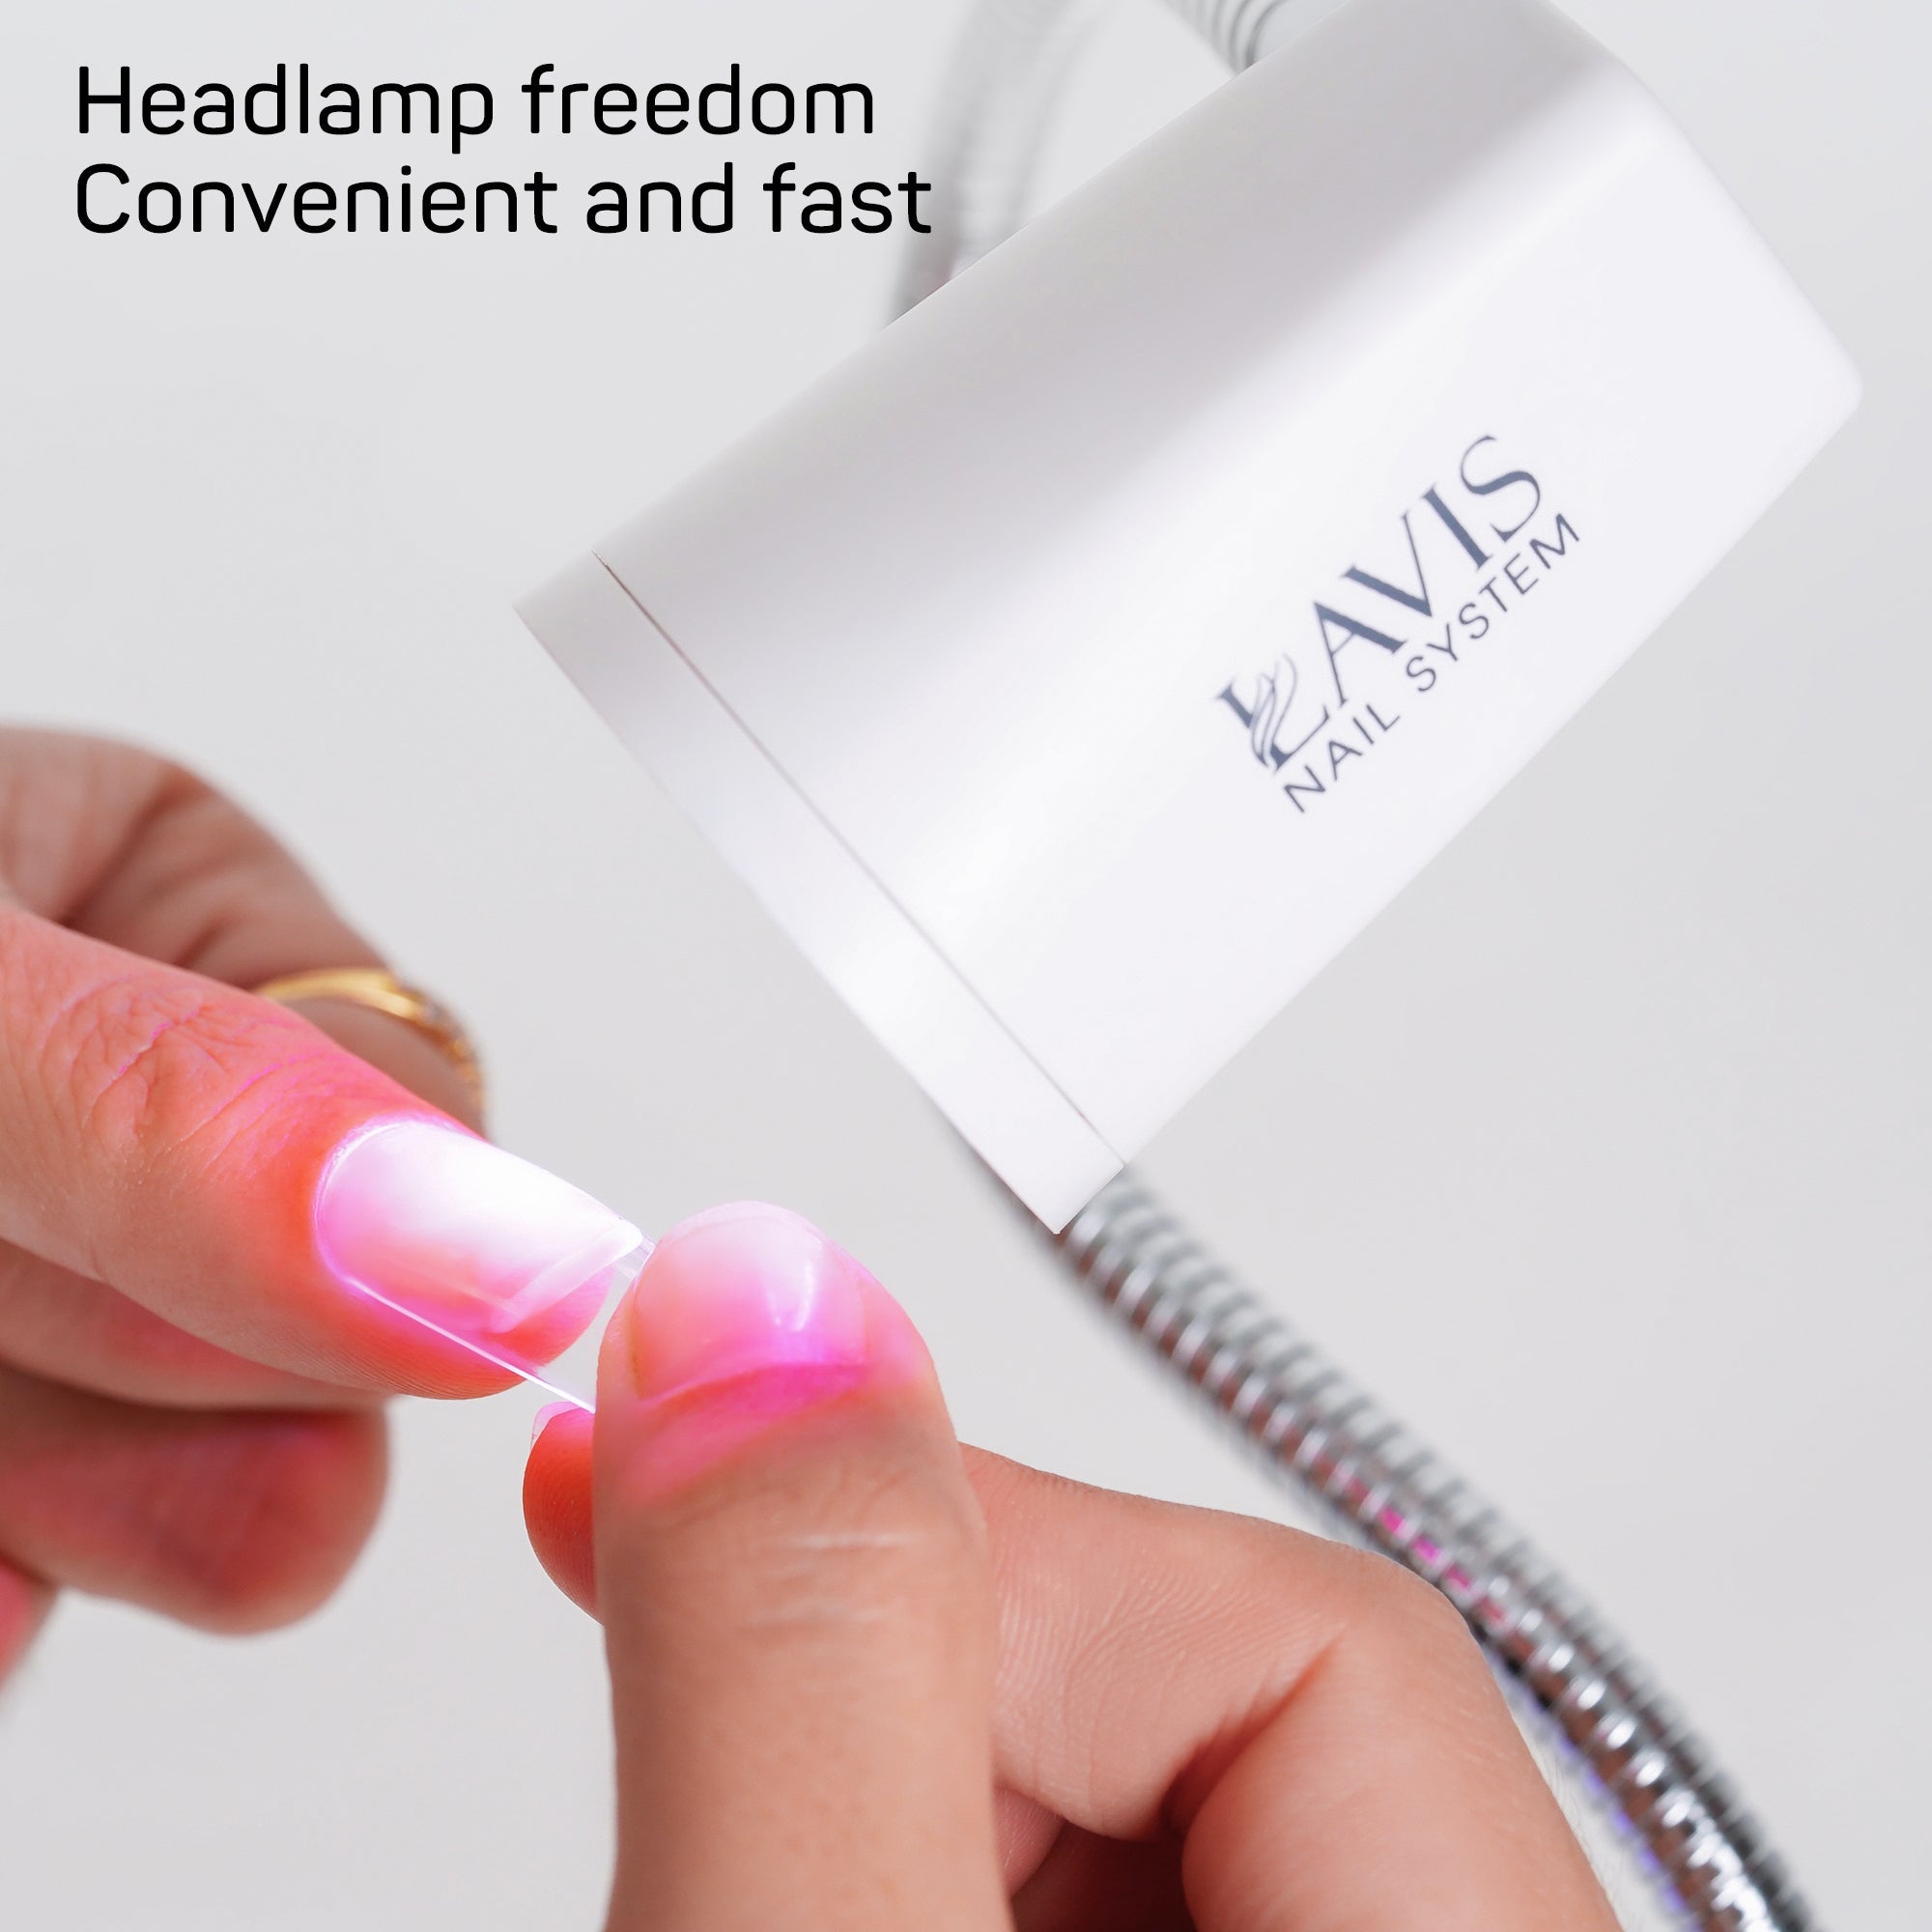 LAVIS Focus UV Lamp for Soft Gel